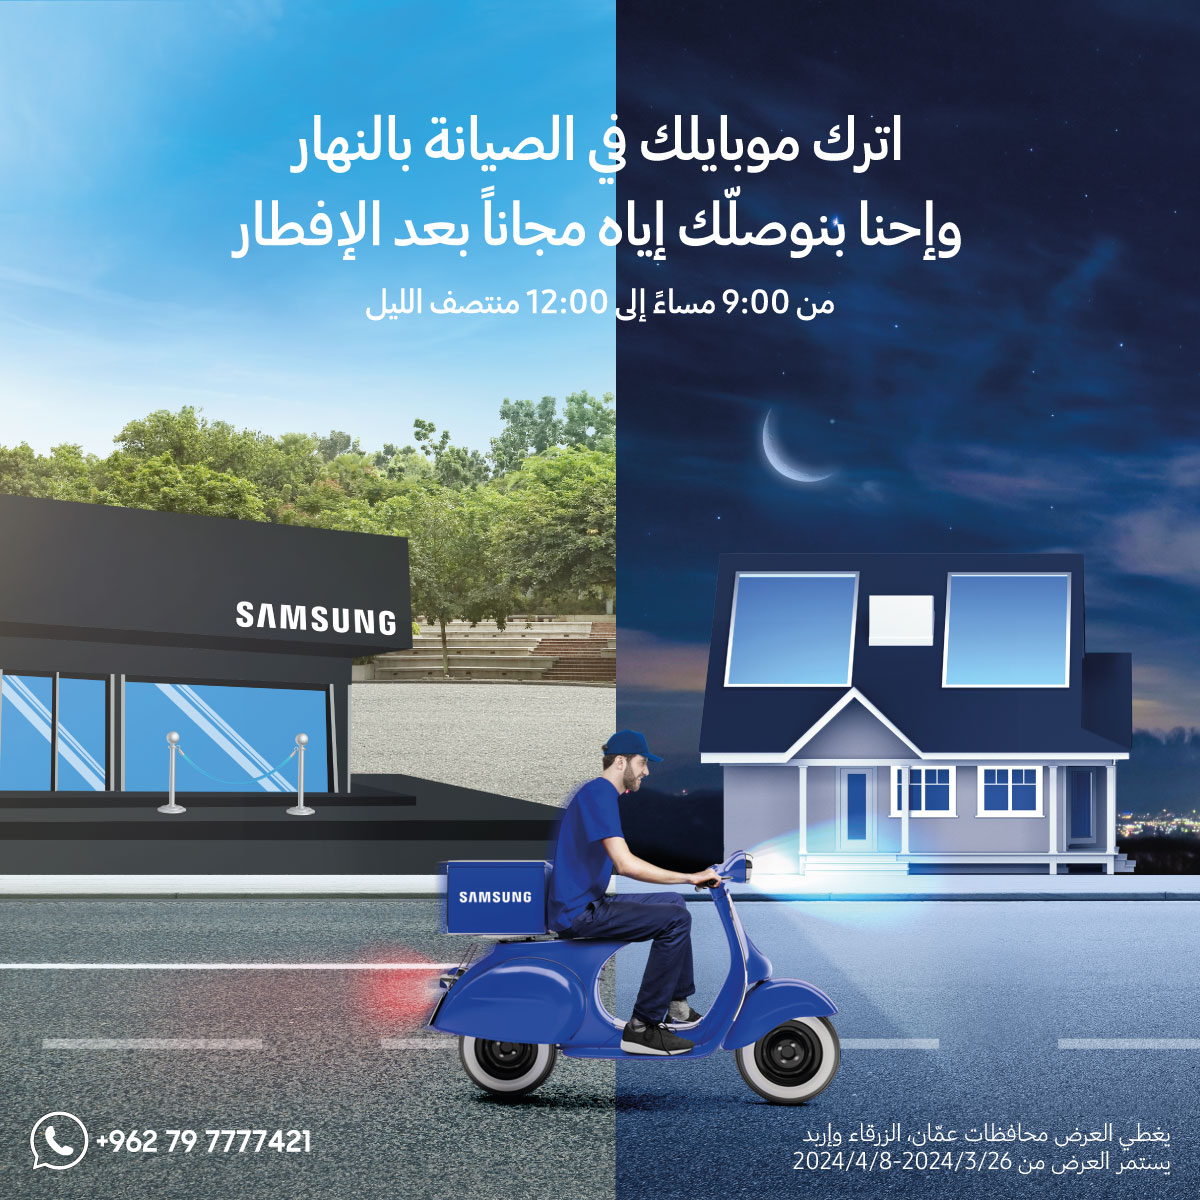 《سامسونج إلكترونيكس》 المشرق العربي تقدم خدمة توصيل الهواتف الذكية من مراكز الصيانة للزبائن خلال الشهر الفضيل